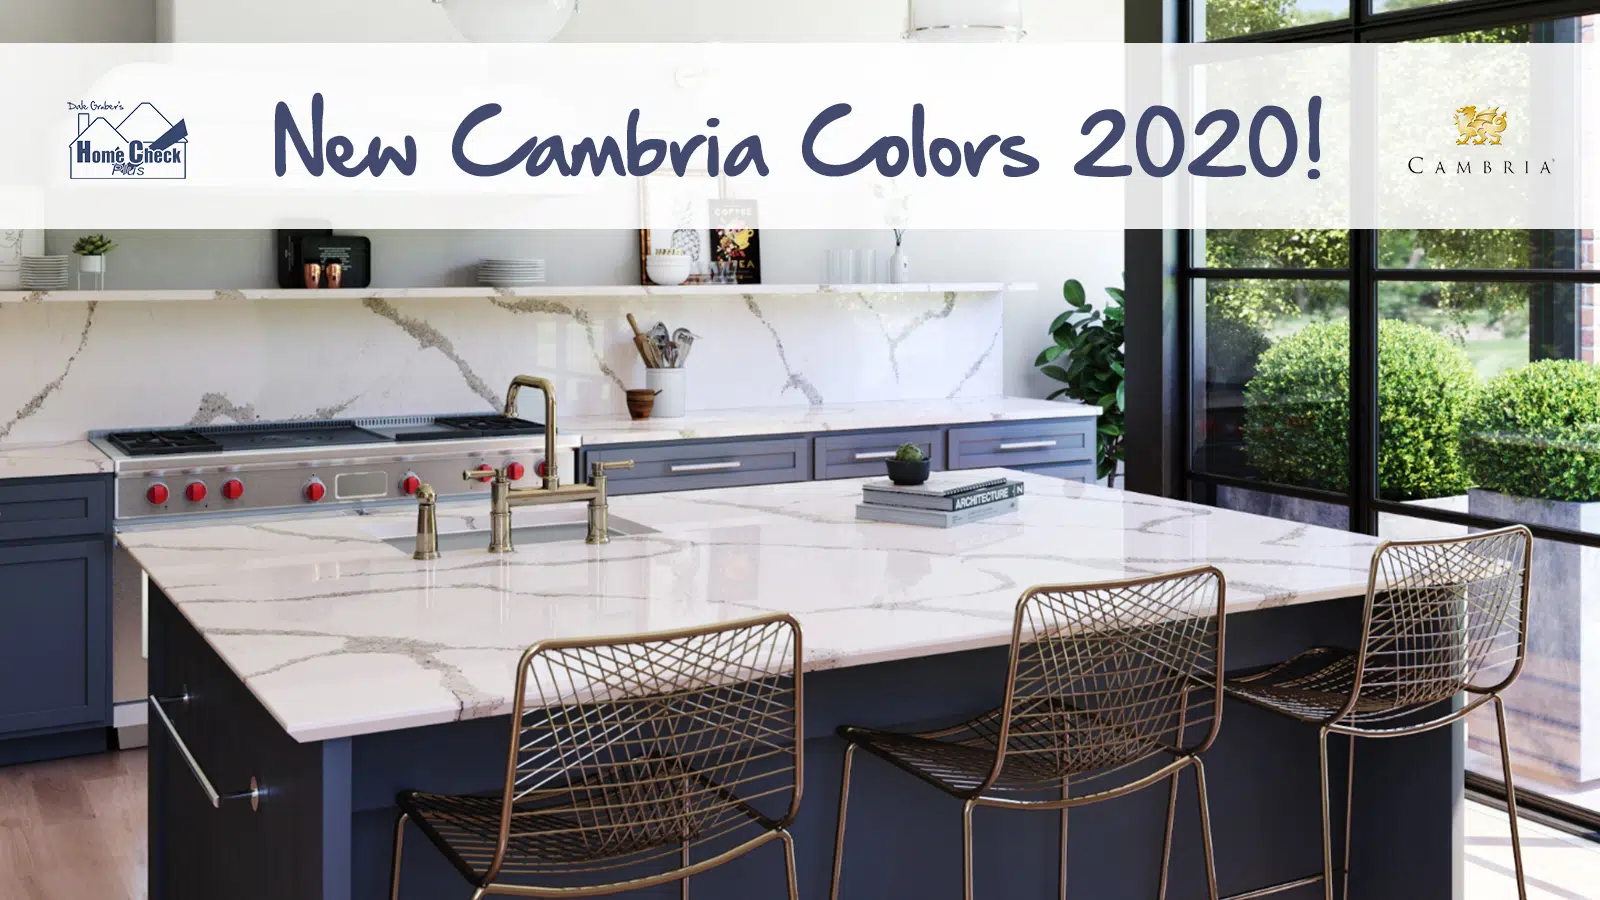 New Cambria Colors 2020